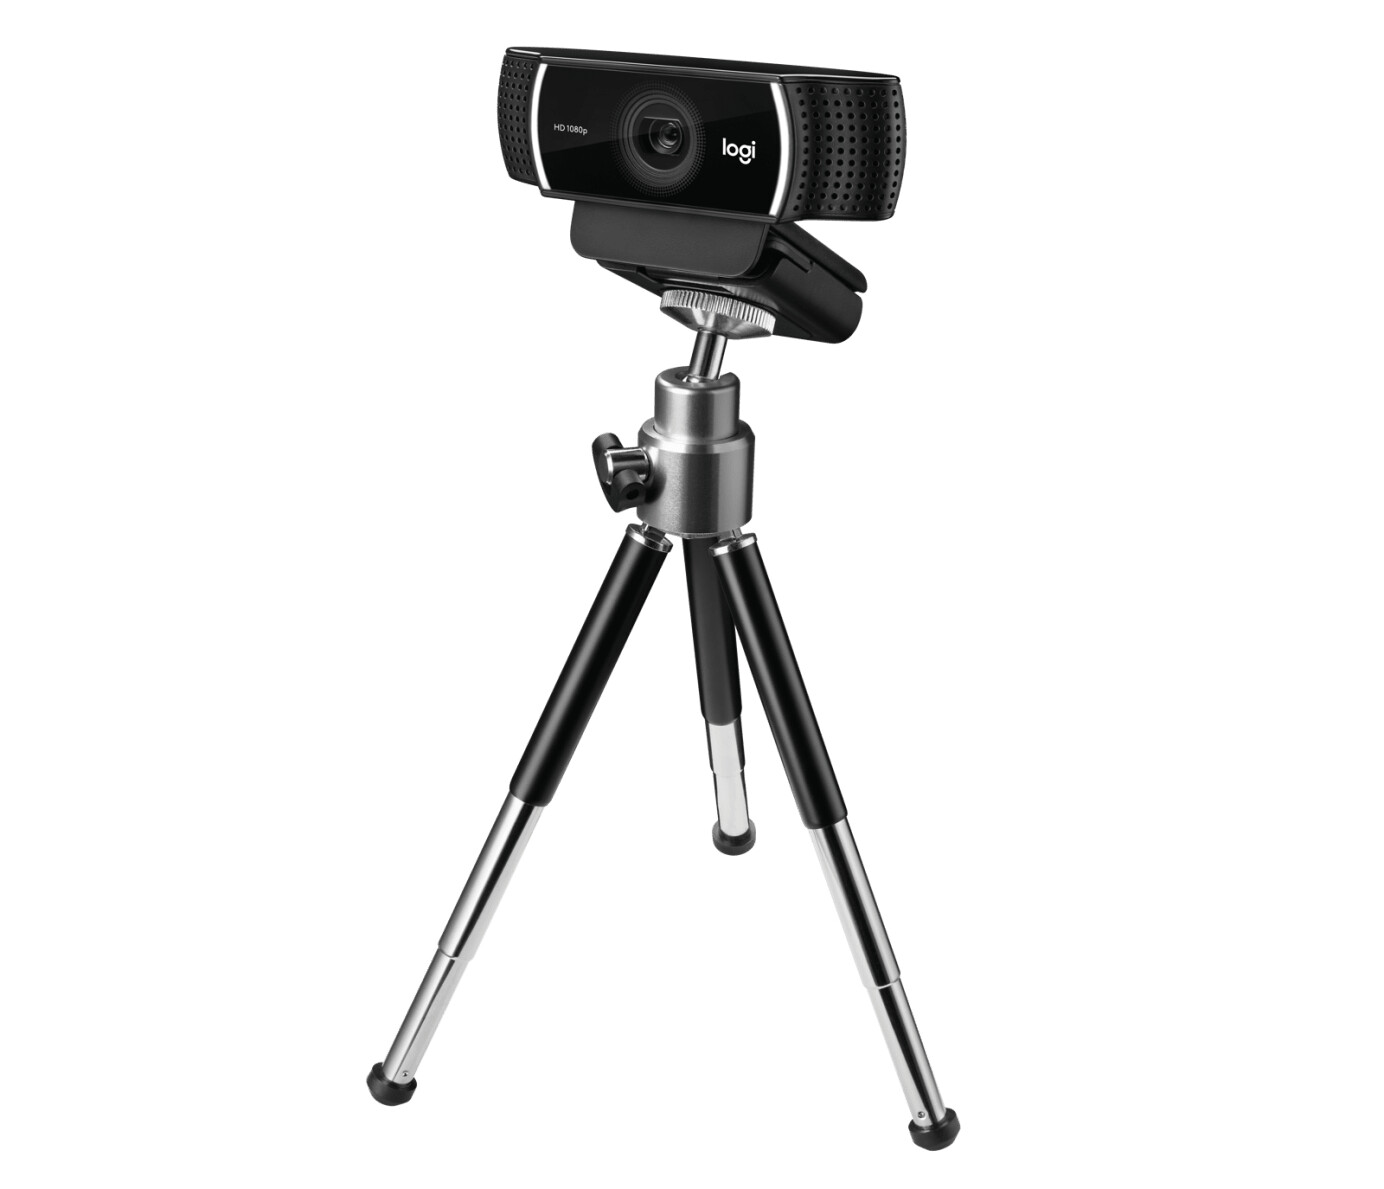 Logitech-C922-Pro-HD-Streaming-Webcam-1080p-30-FPS-FOV-78-Autofocus